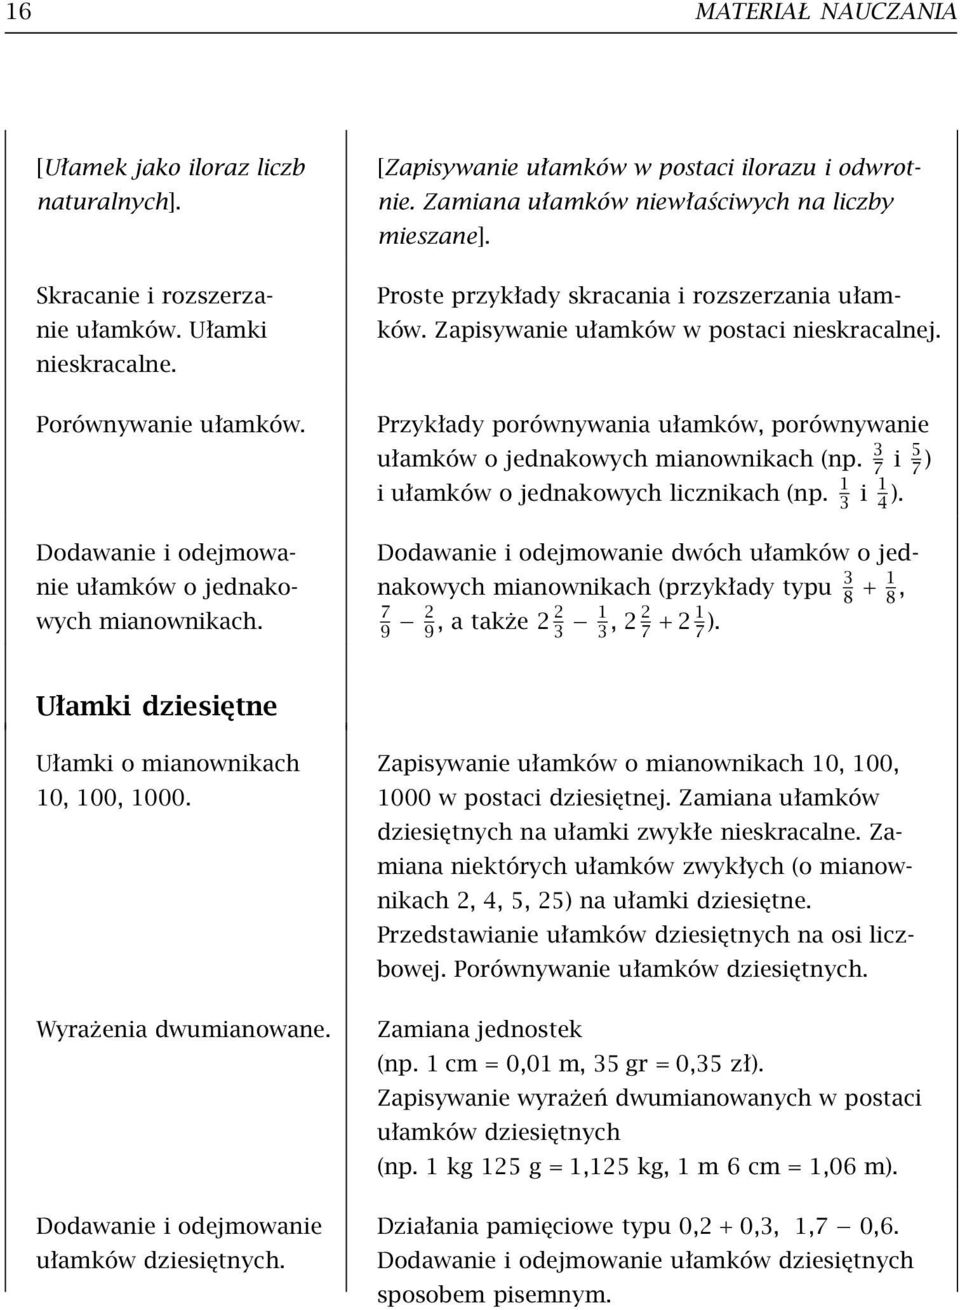 Przykłady porównywania ułamków, porównywanie ułamków o jednakowych mianownikach (np. 3 7 i 5 7 ) i ułamków o jednakowych licznikach (np. 1 3 i 1 4 ).